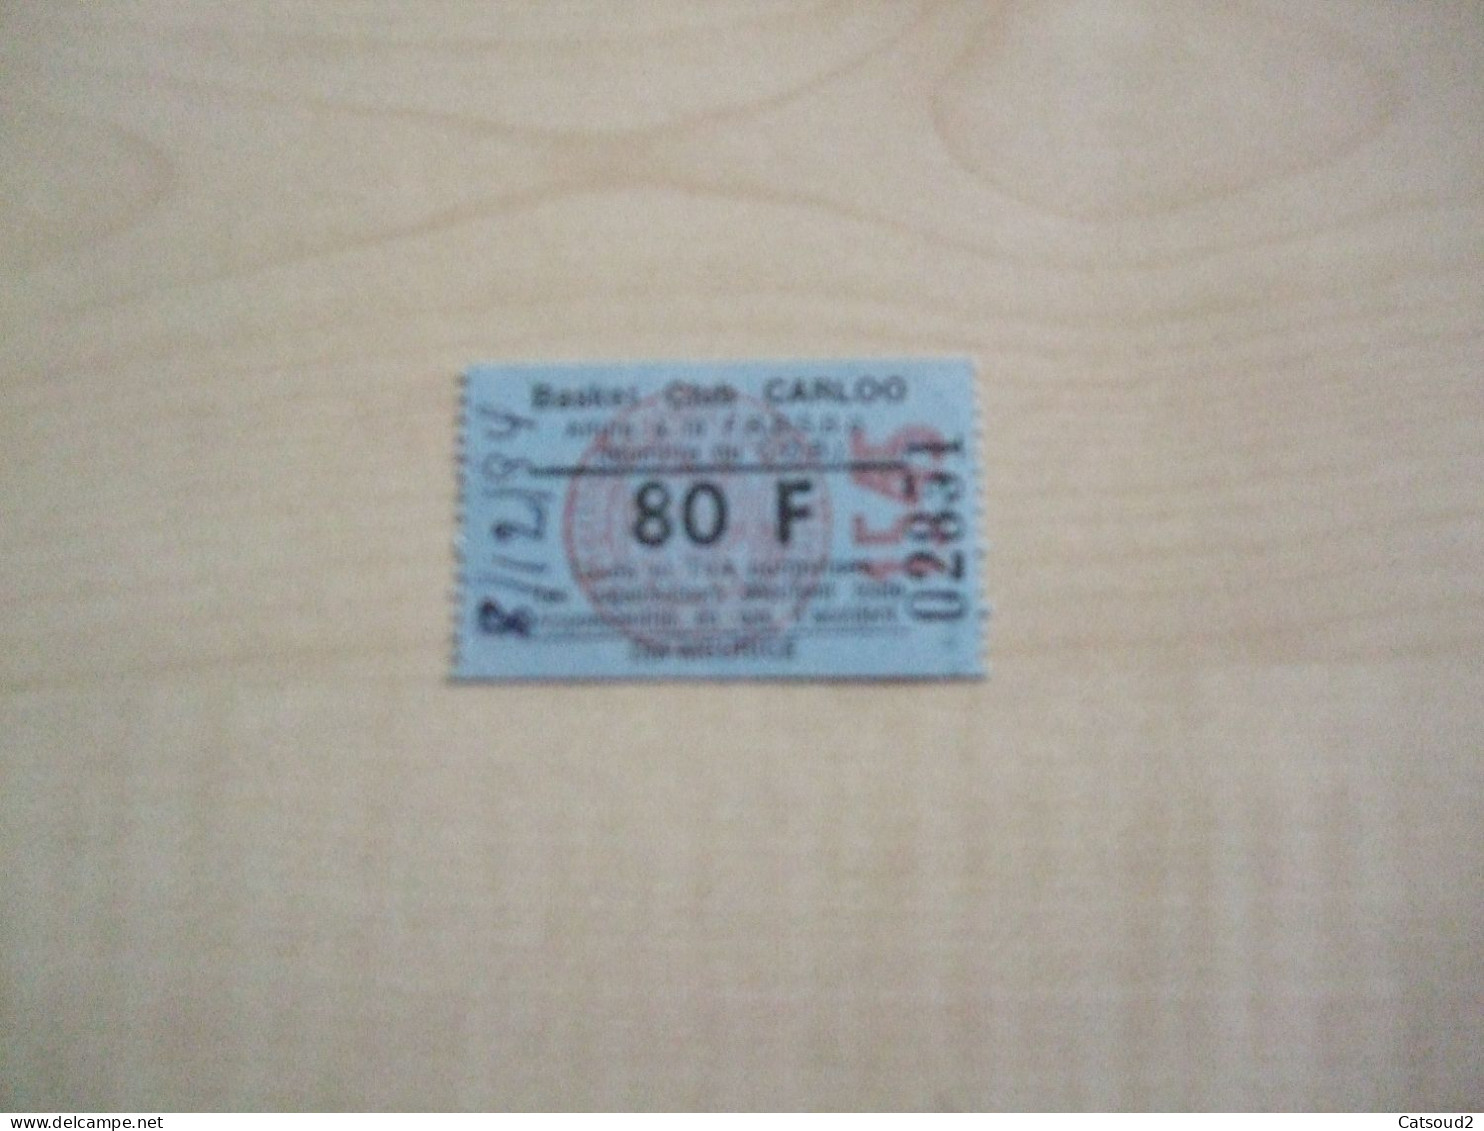 Ancien Ticket BASKET CLUB CARLOO - Eintrittskarten